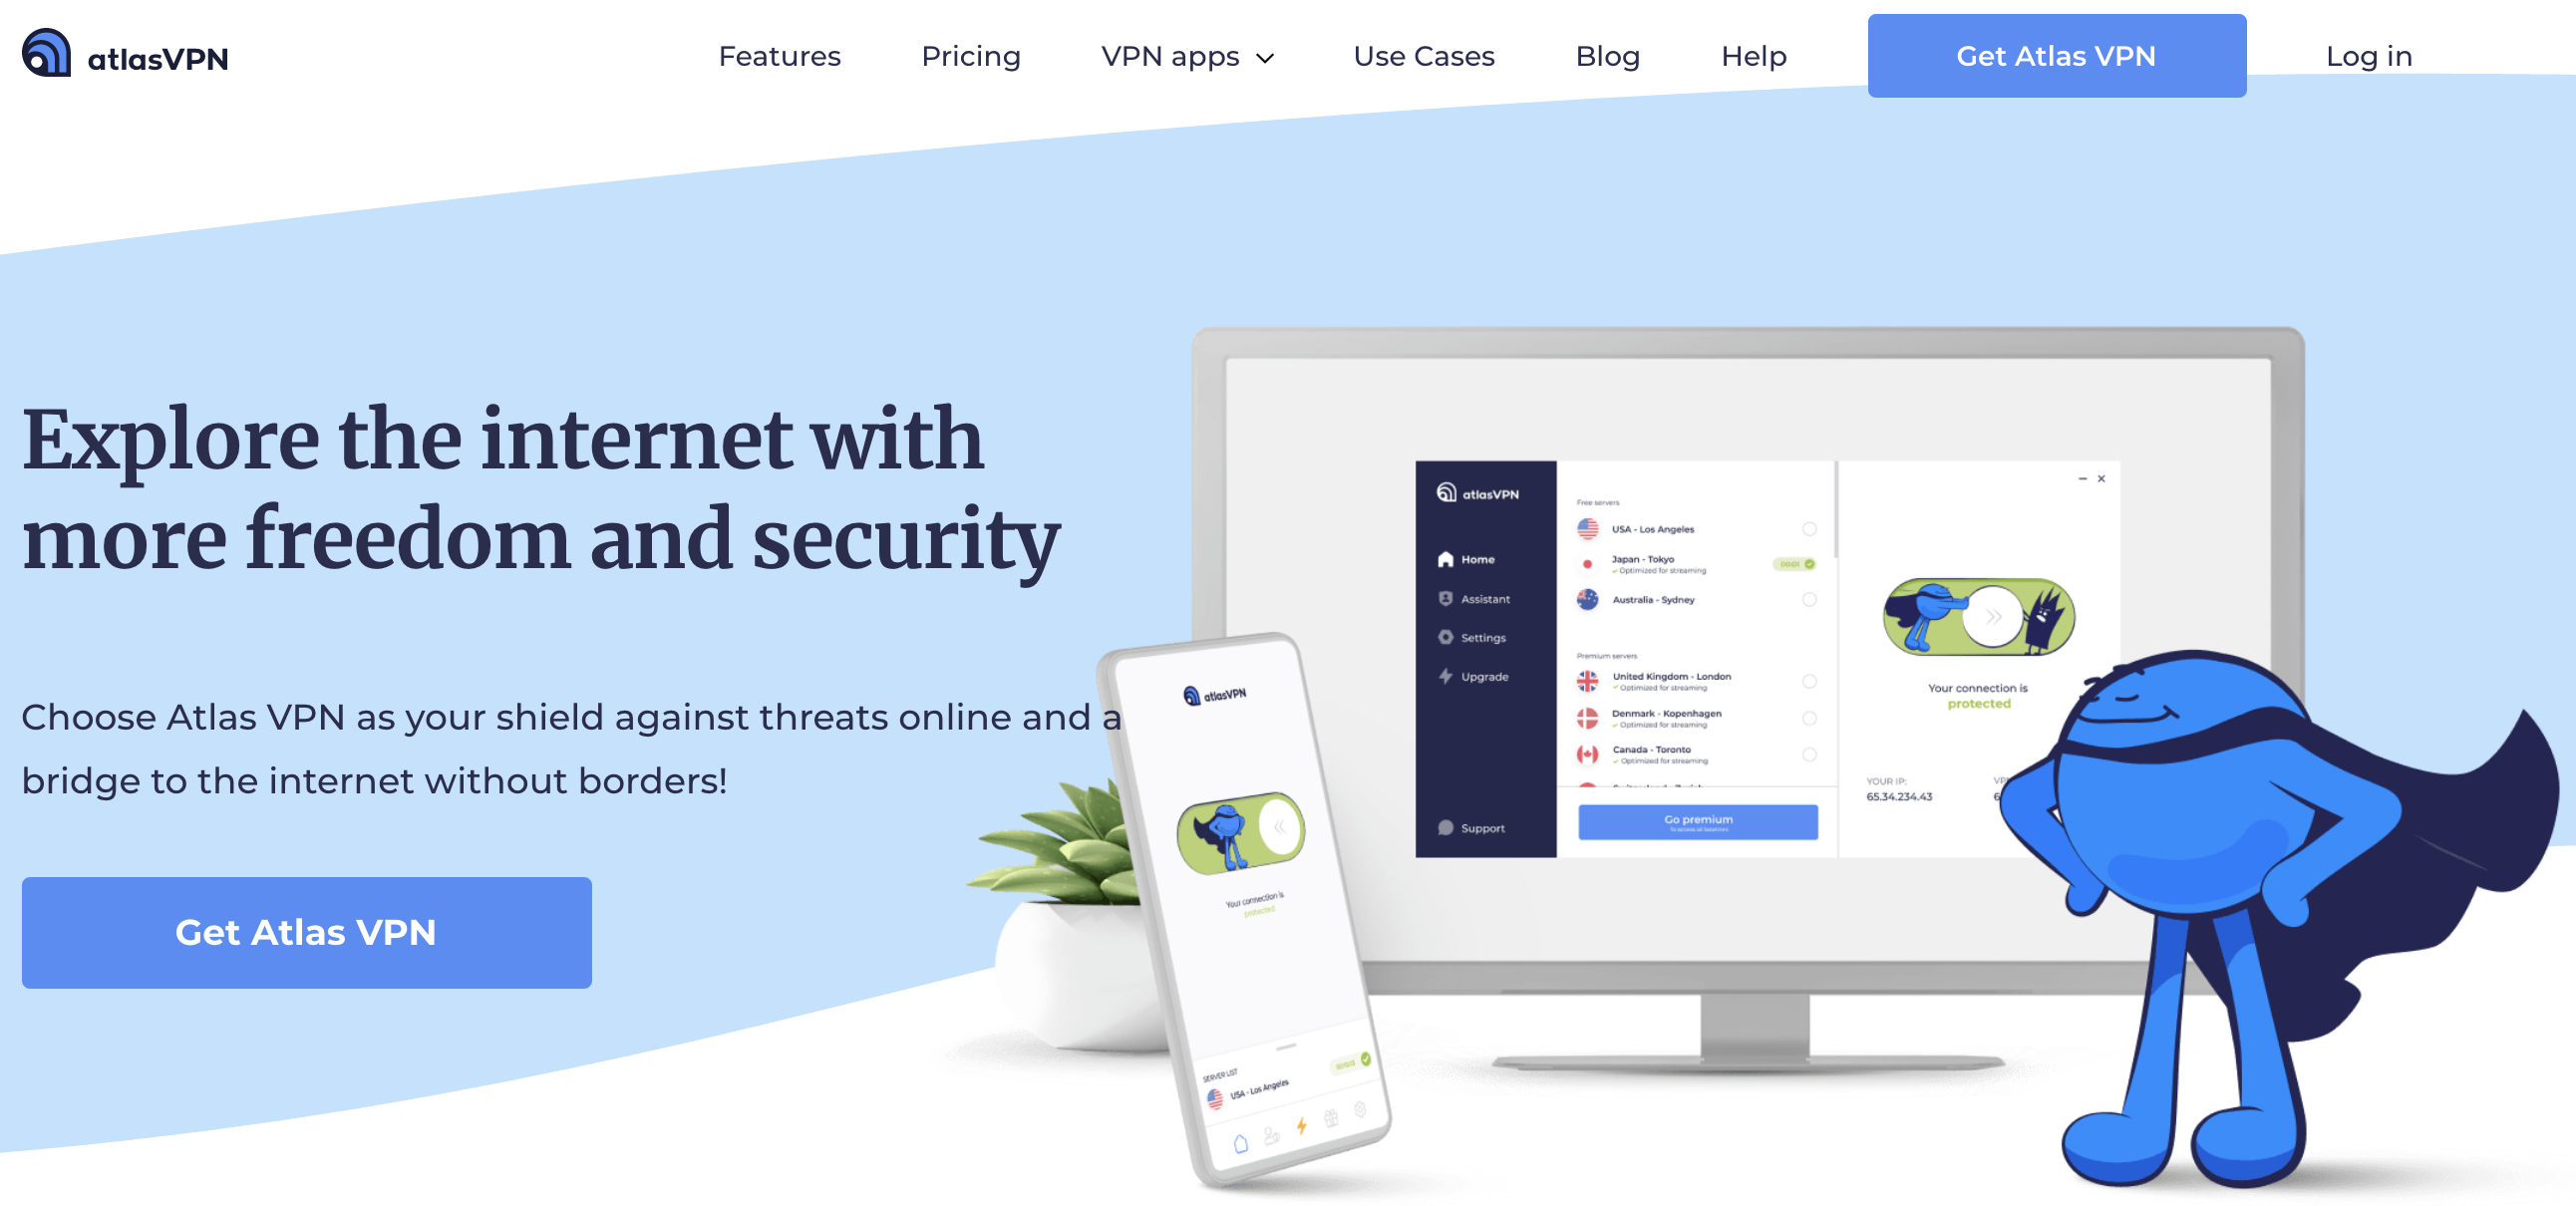 Atlas VPN home page